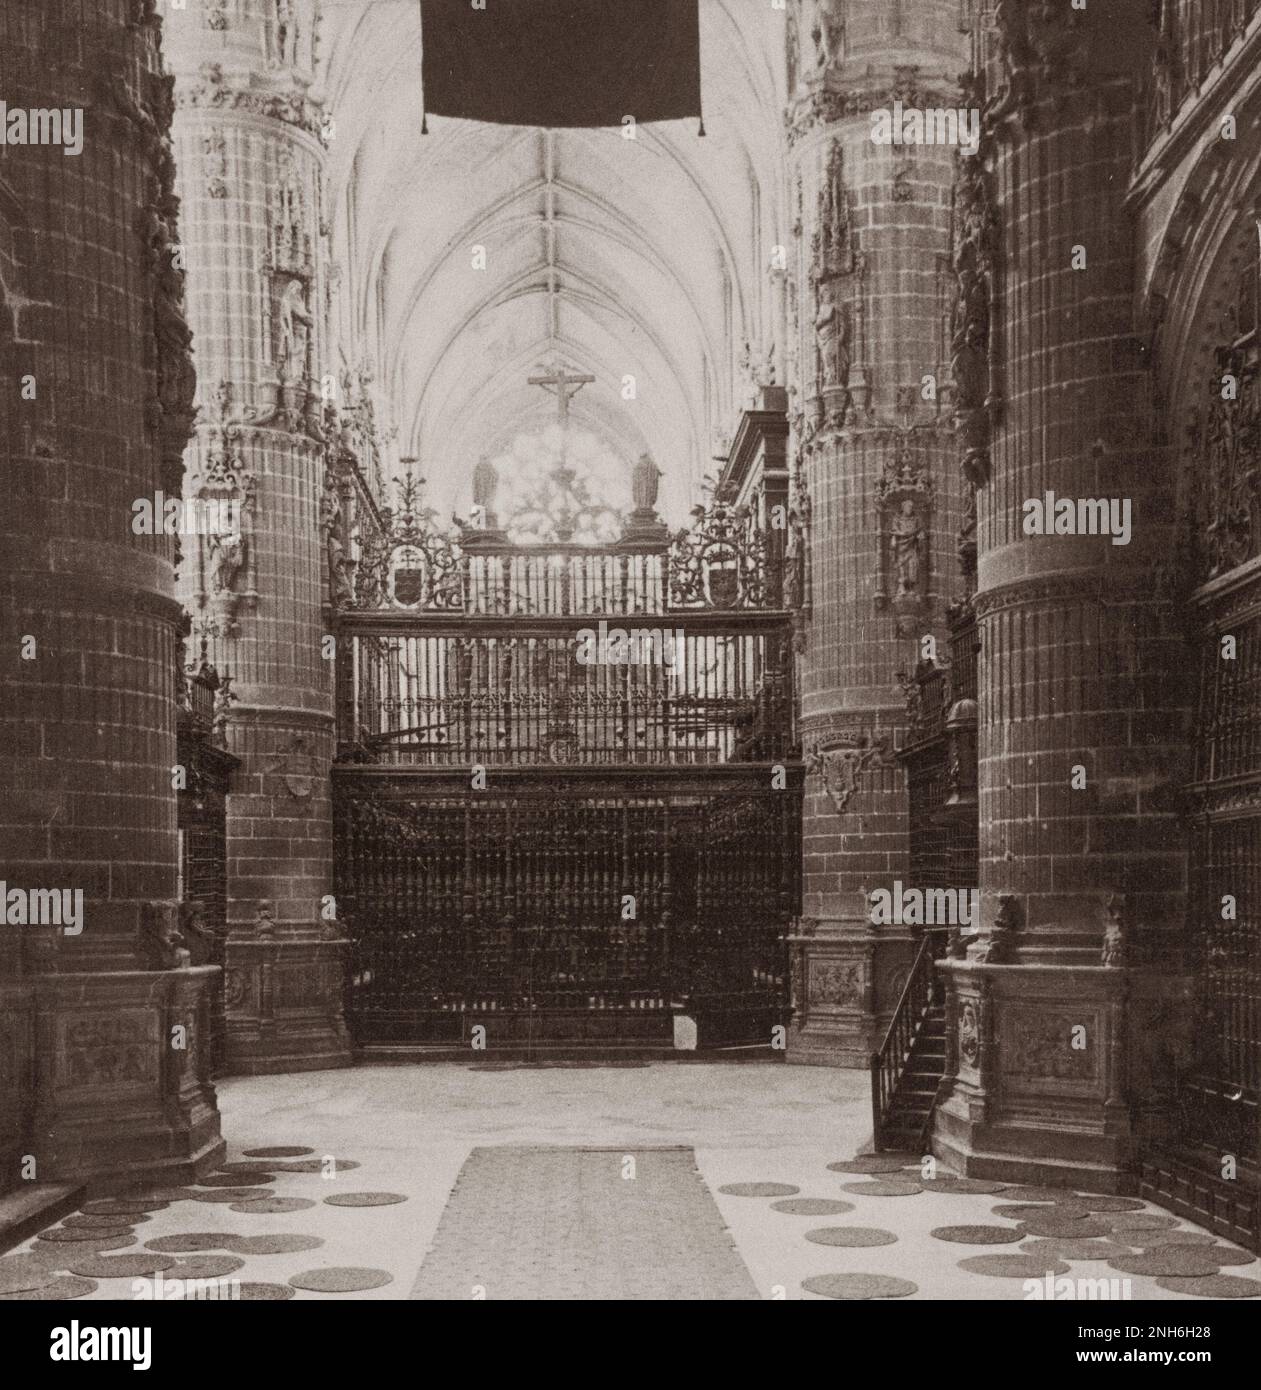 Architektur des alten Spaniens. In der Kathedrale von Burgos, Spanien - eines der reichsten Denkmäler der christlichen Architektur. 1902 Stockfoto